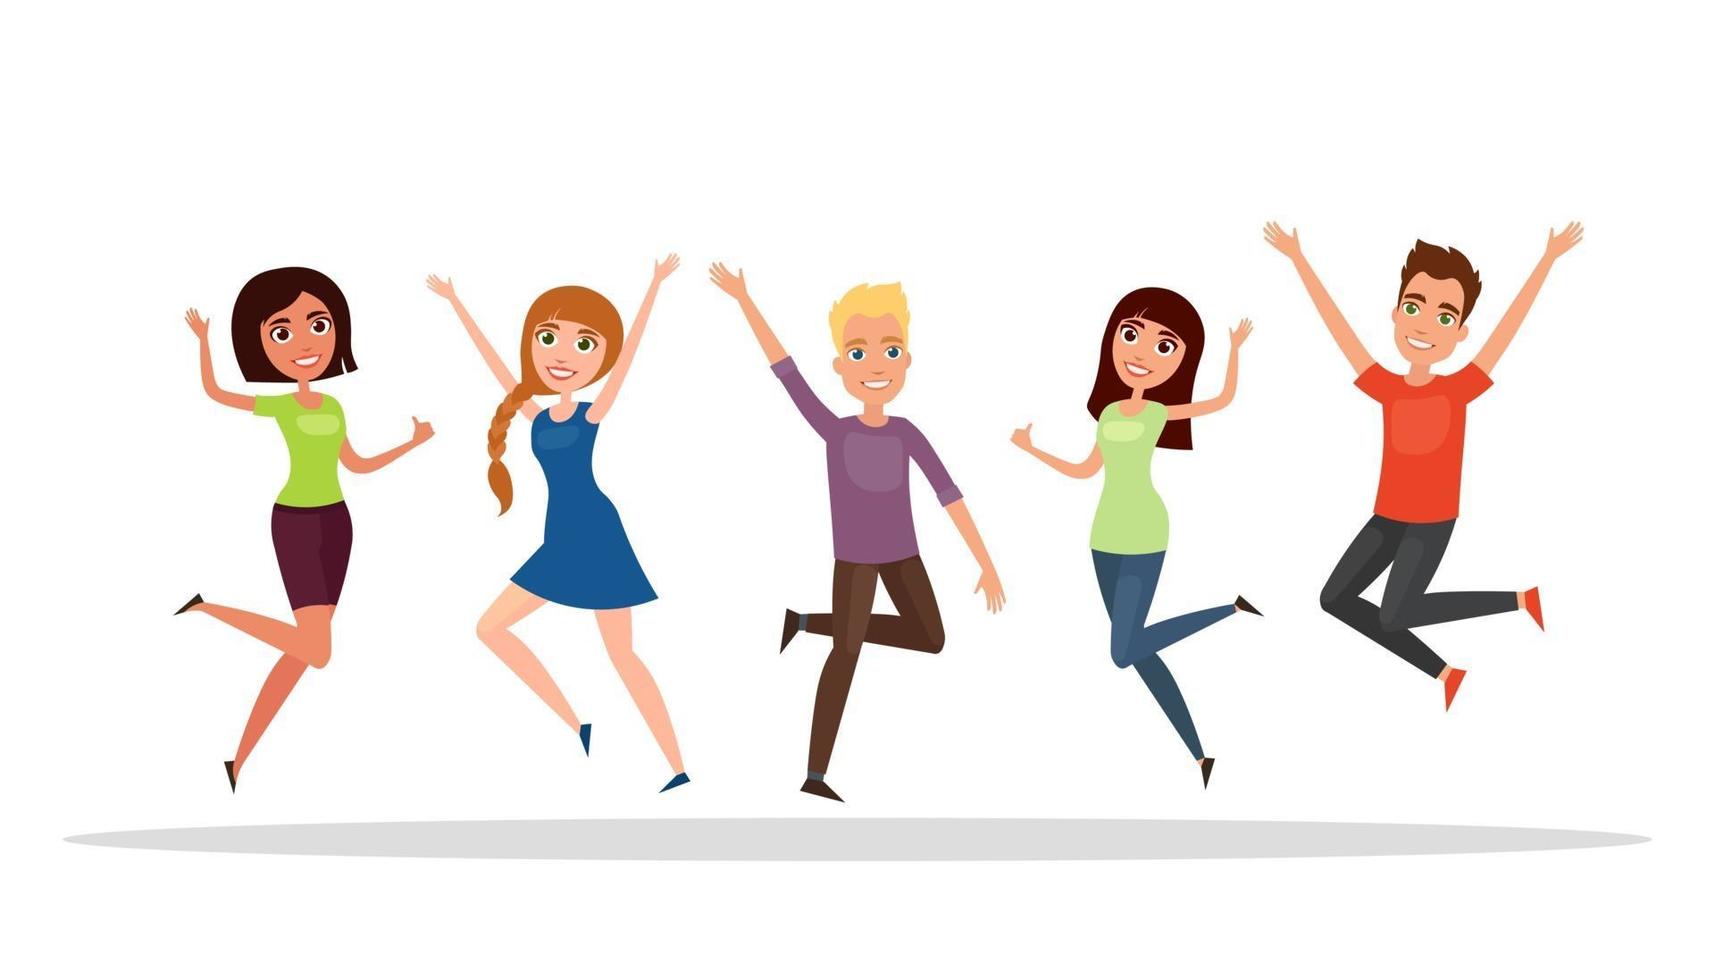 gelukkige groep mensen, jongen, meisje springen op een witte achtergrond. vector